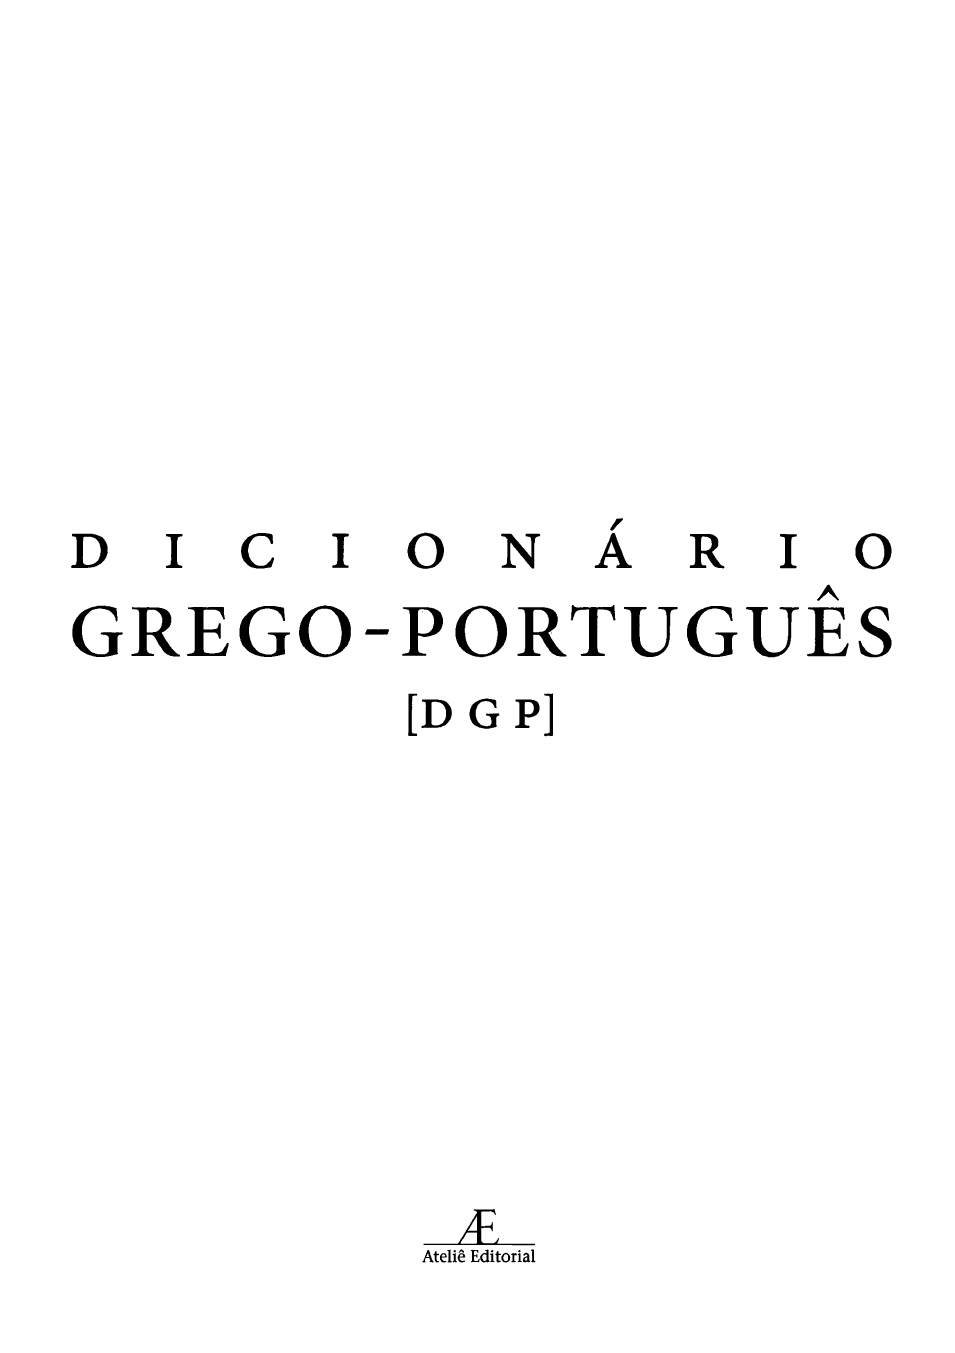 Espartano - Dicio, Dicionário Online de Português